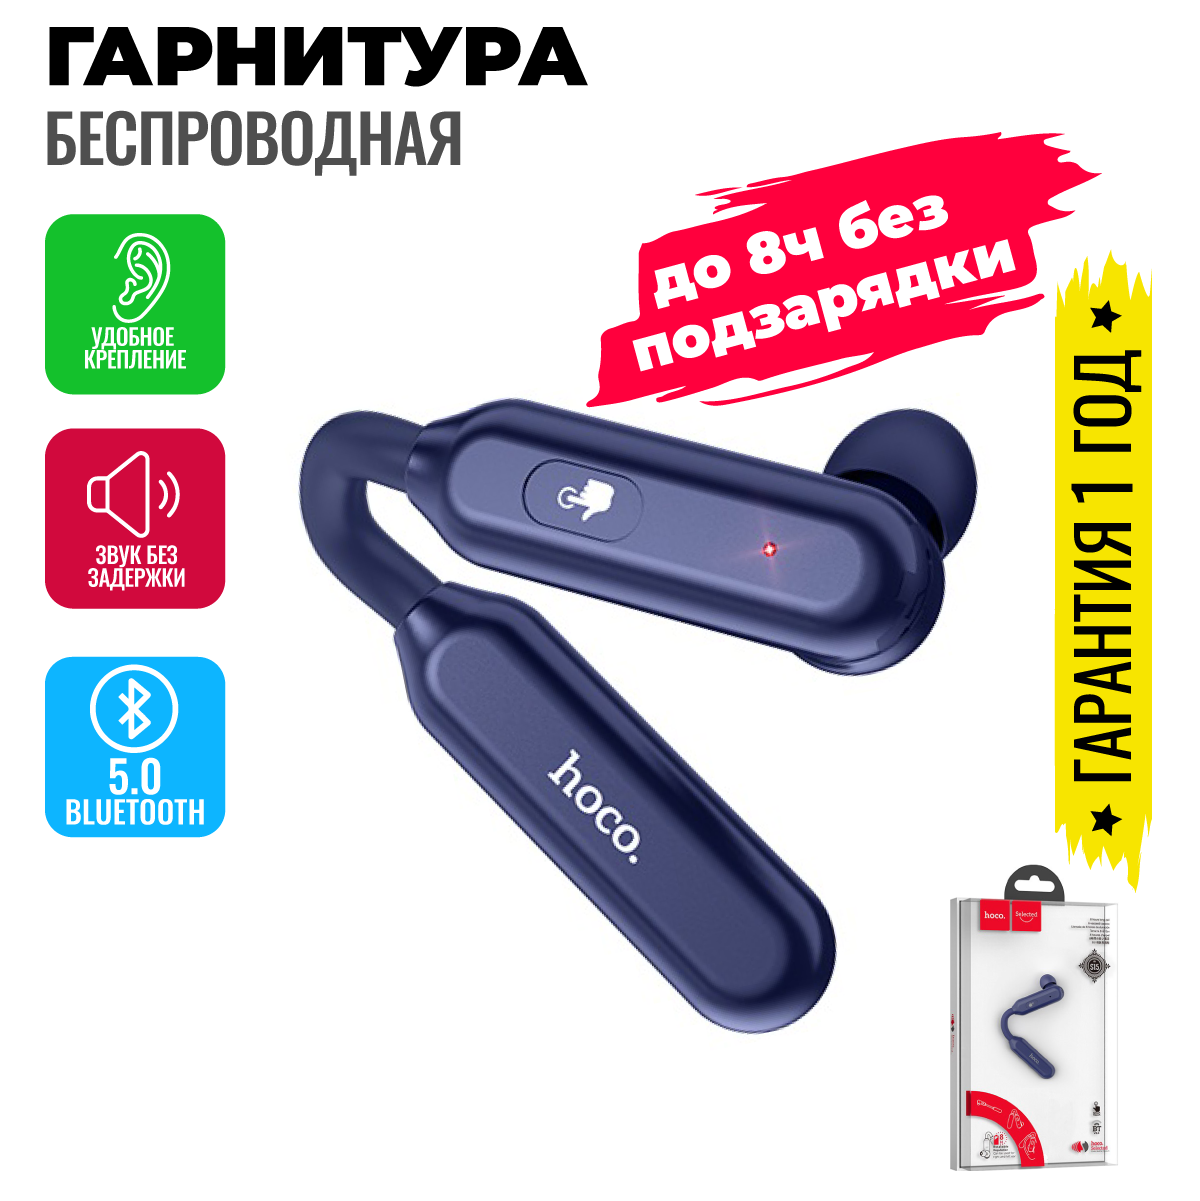 Беспроводная гарнитура Bluetooth для телефона на ухо / Наушник с микрофоном и блютуз для водителя и под шлем мотоцикла / Hoco S15